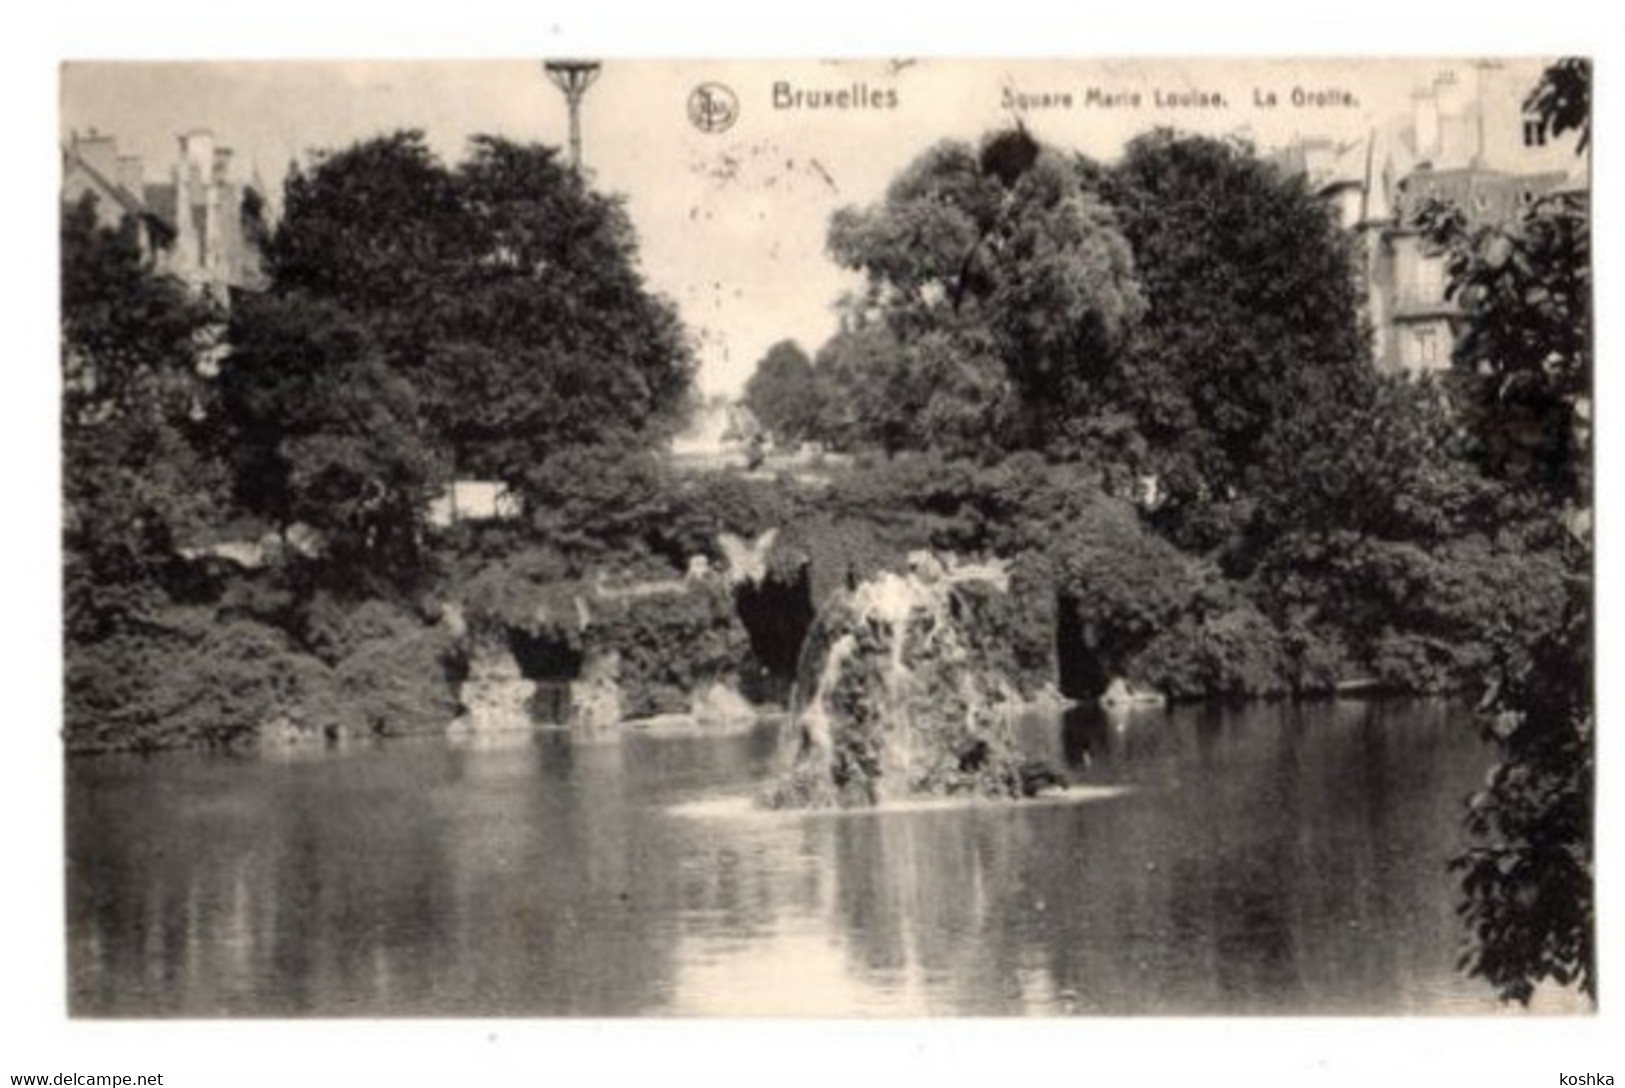 BRUSSEL - Bruxelles - Square Marie Louise - La Grotte - Verzonden Envoyée 1914 - édit  Nels Serie 1 No 248 - Forêts, Parcs, Jardins